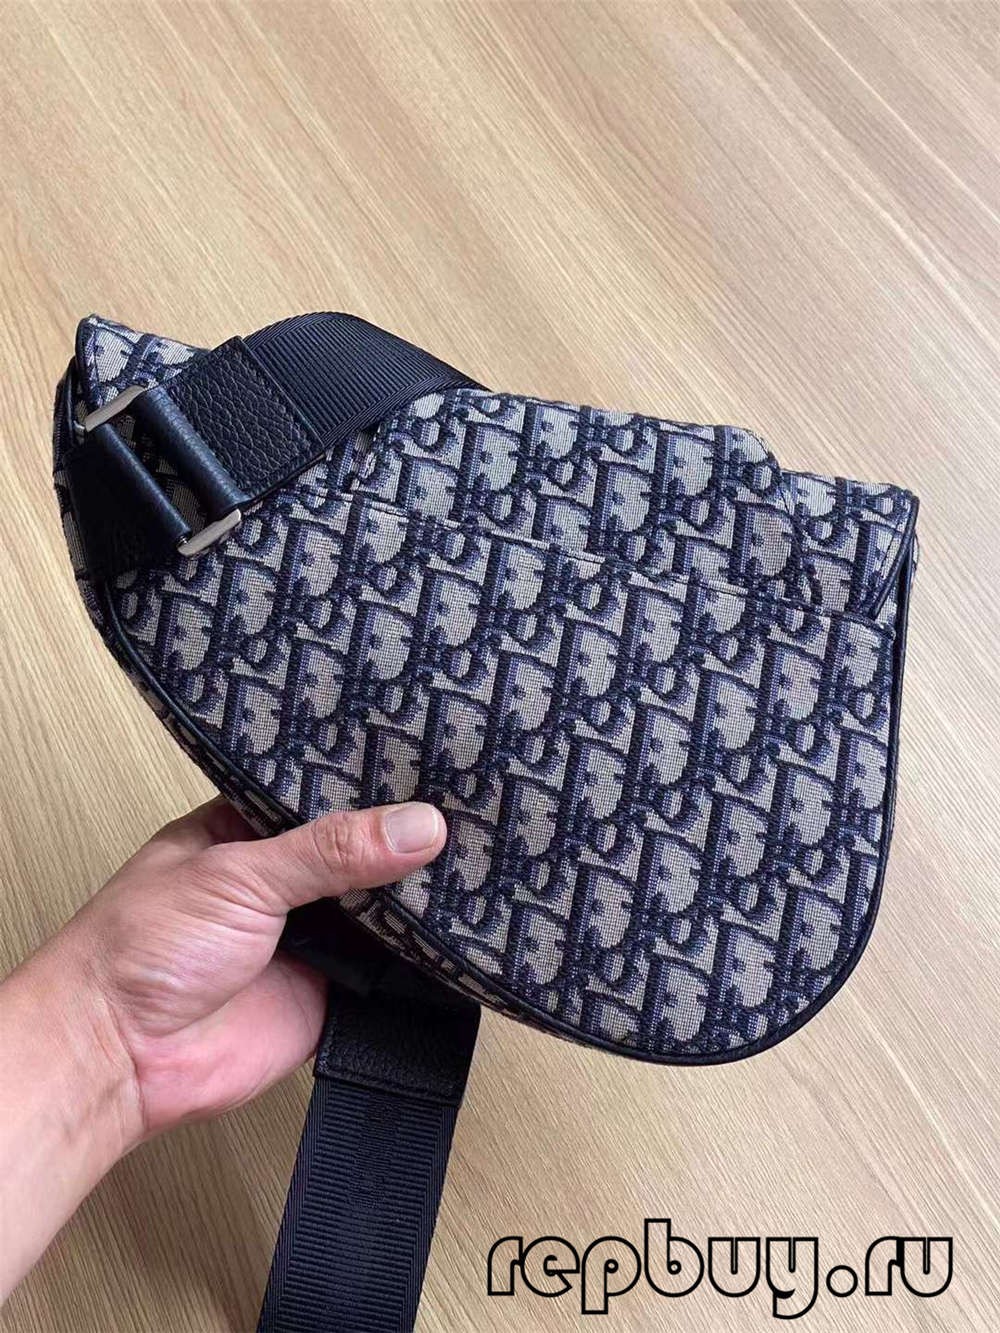 Dior top replica saddle bag black embroidery Oblique print 26cm (2022 Special)-Best Quality Fake designer Bag Review, Replica designer bag ru